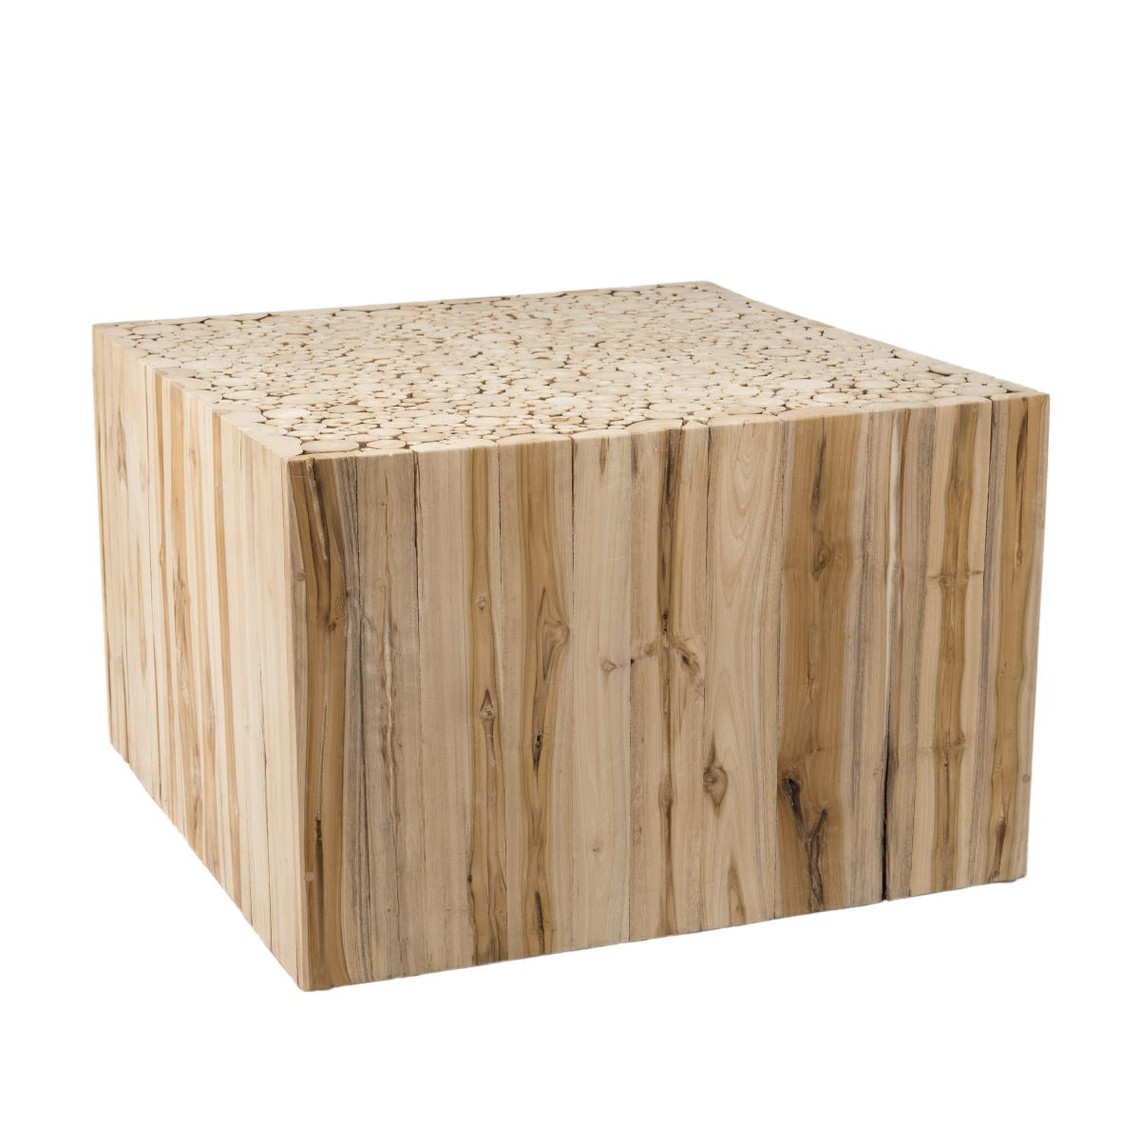 Table basse carrée bois nature en Teck - CAMIL